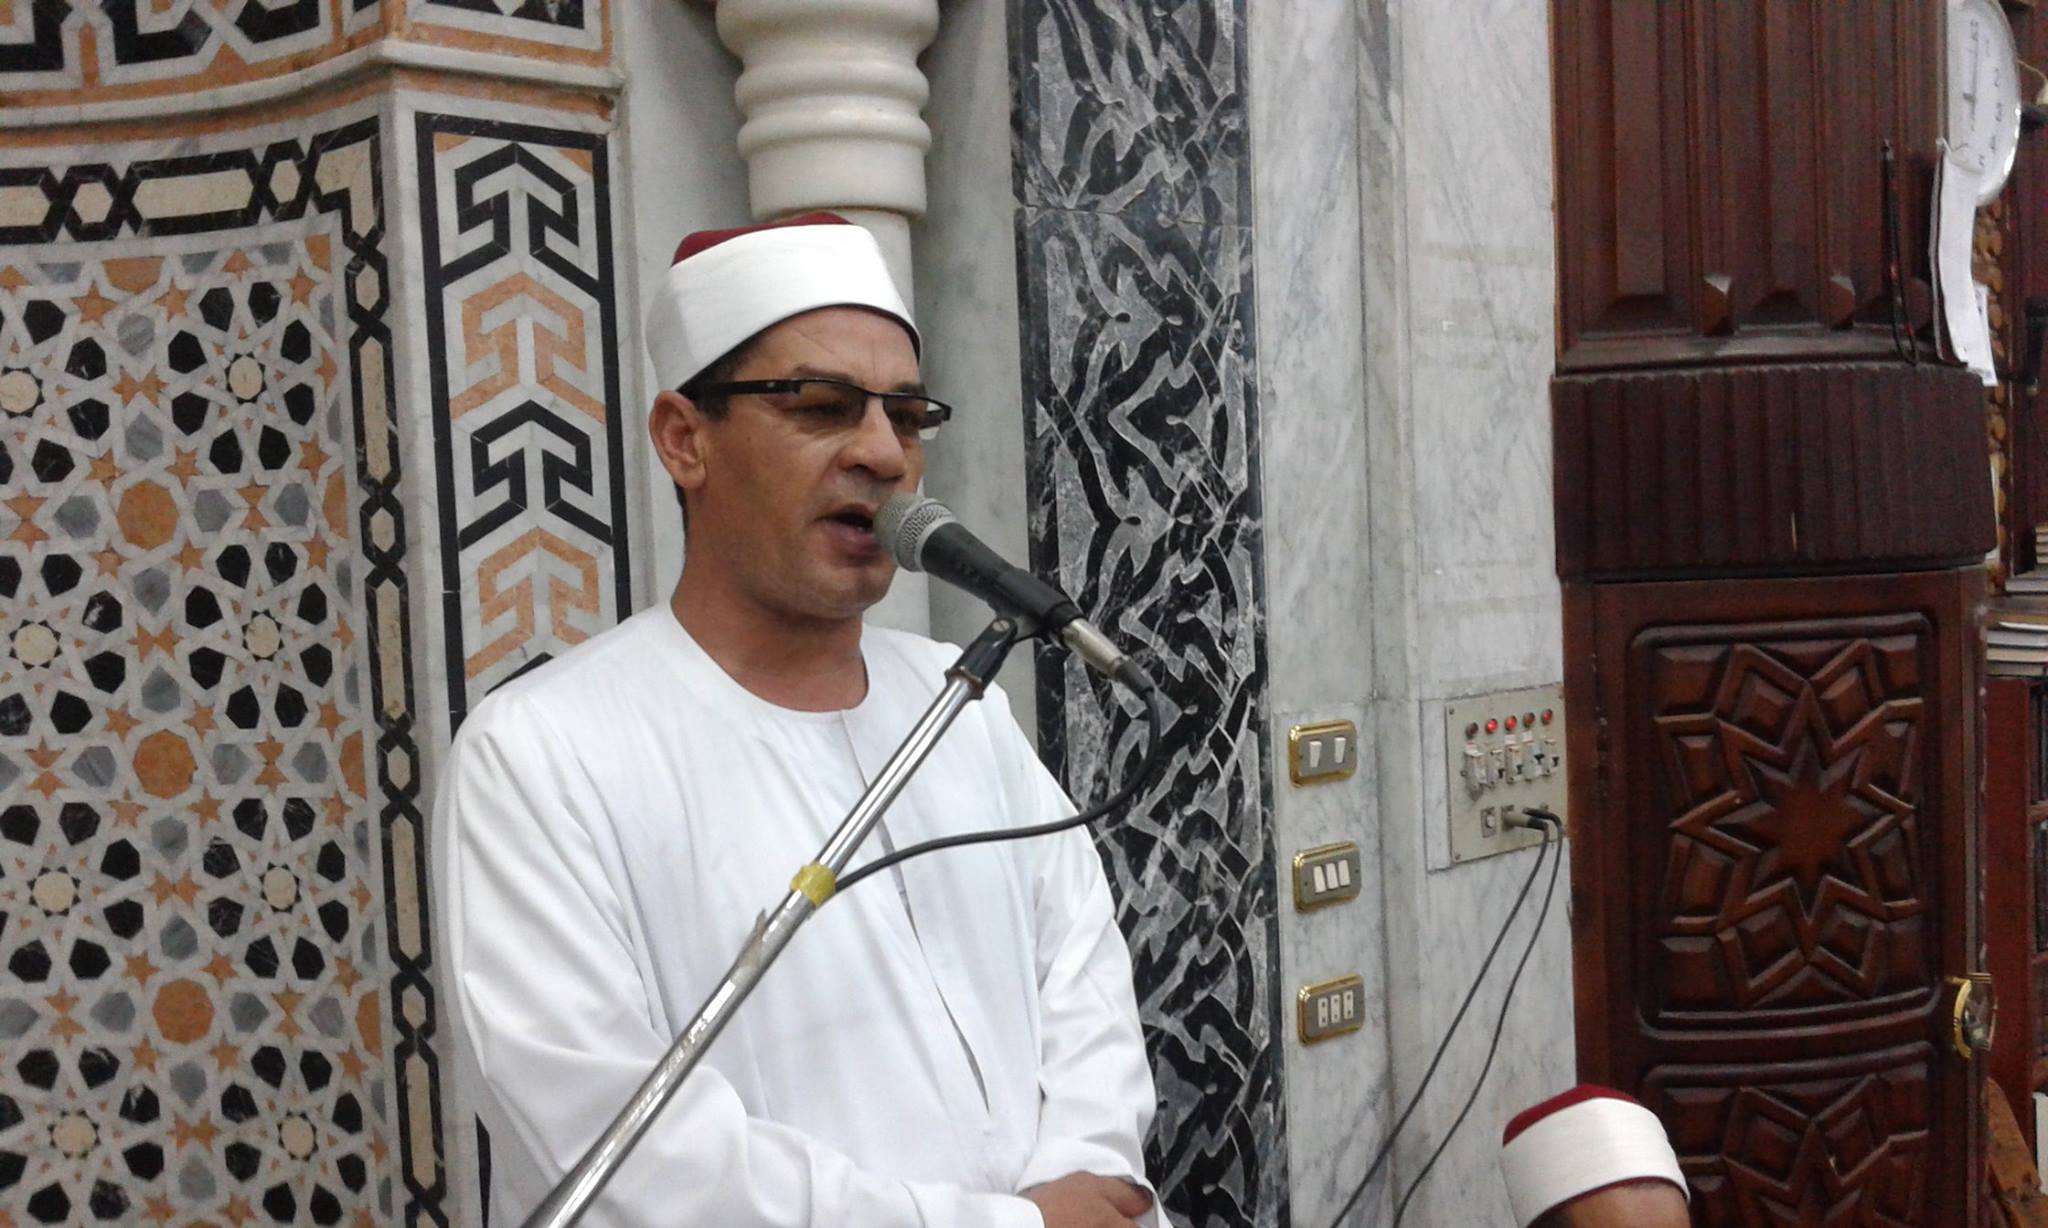  خلاف في مسجد وعدد من الزوايا على صيغة التكبيرات عقب الصلوات  بكفر الشيخ 